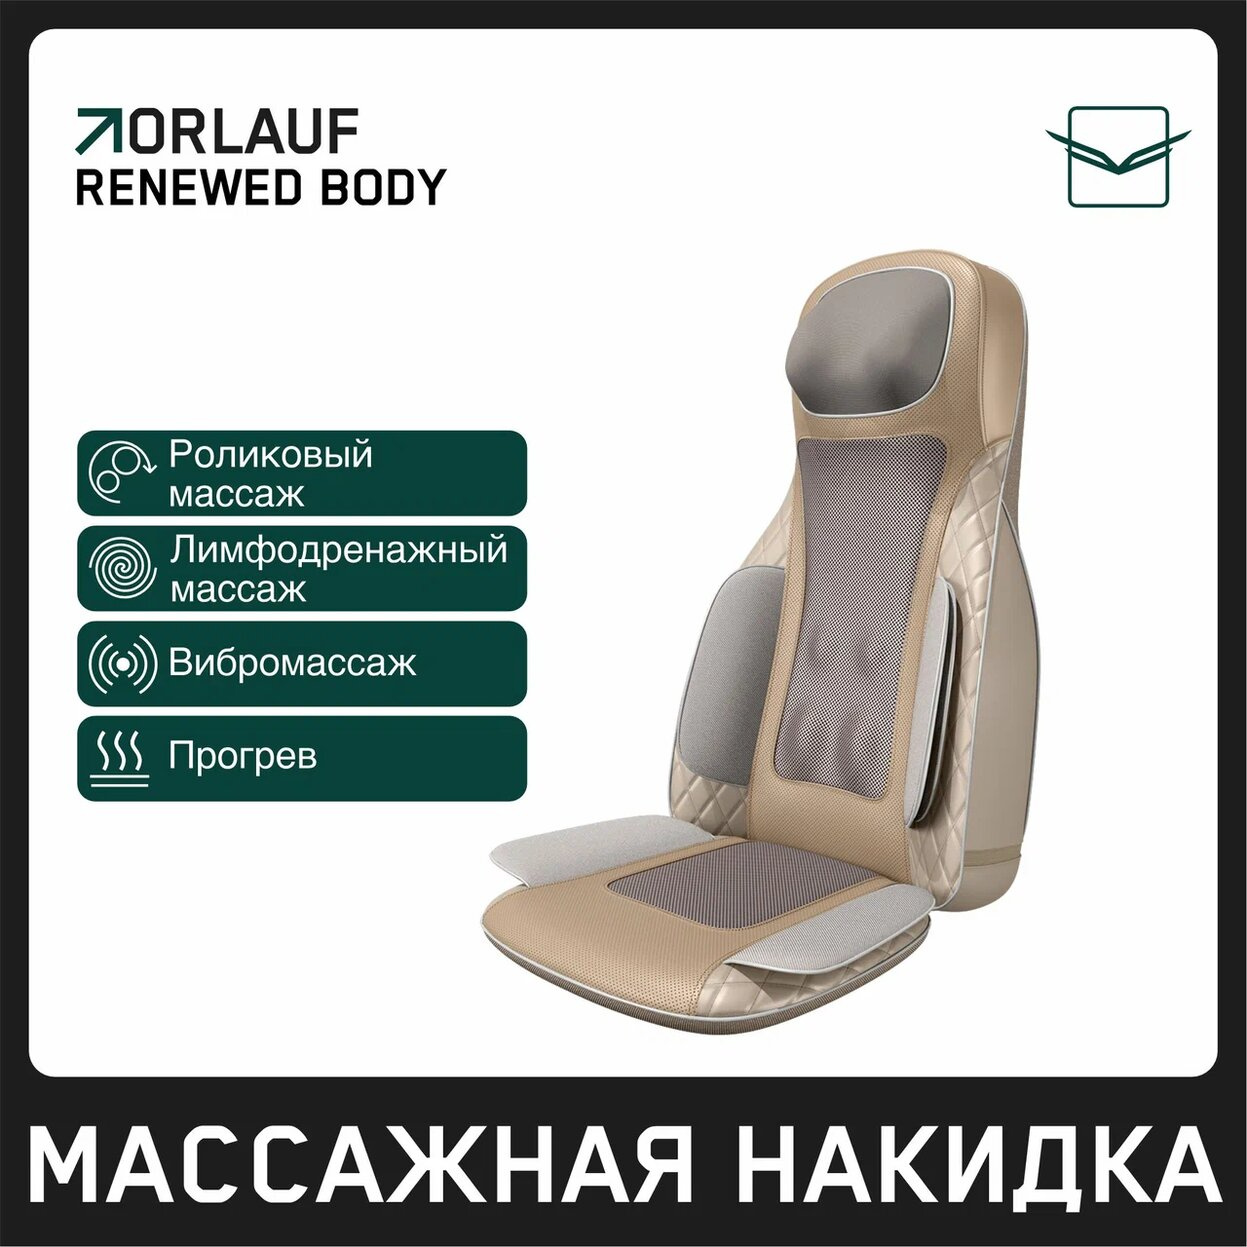 Orlauf Renewed Body из каталога массажных накидок в Тольятти по цене 39900 ₽